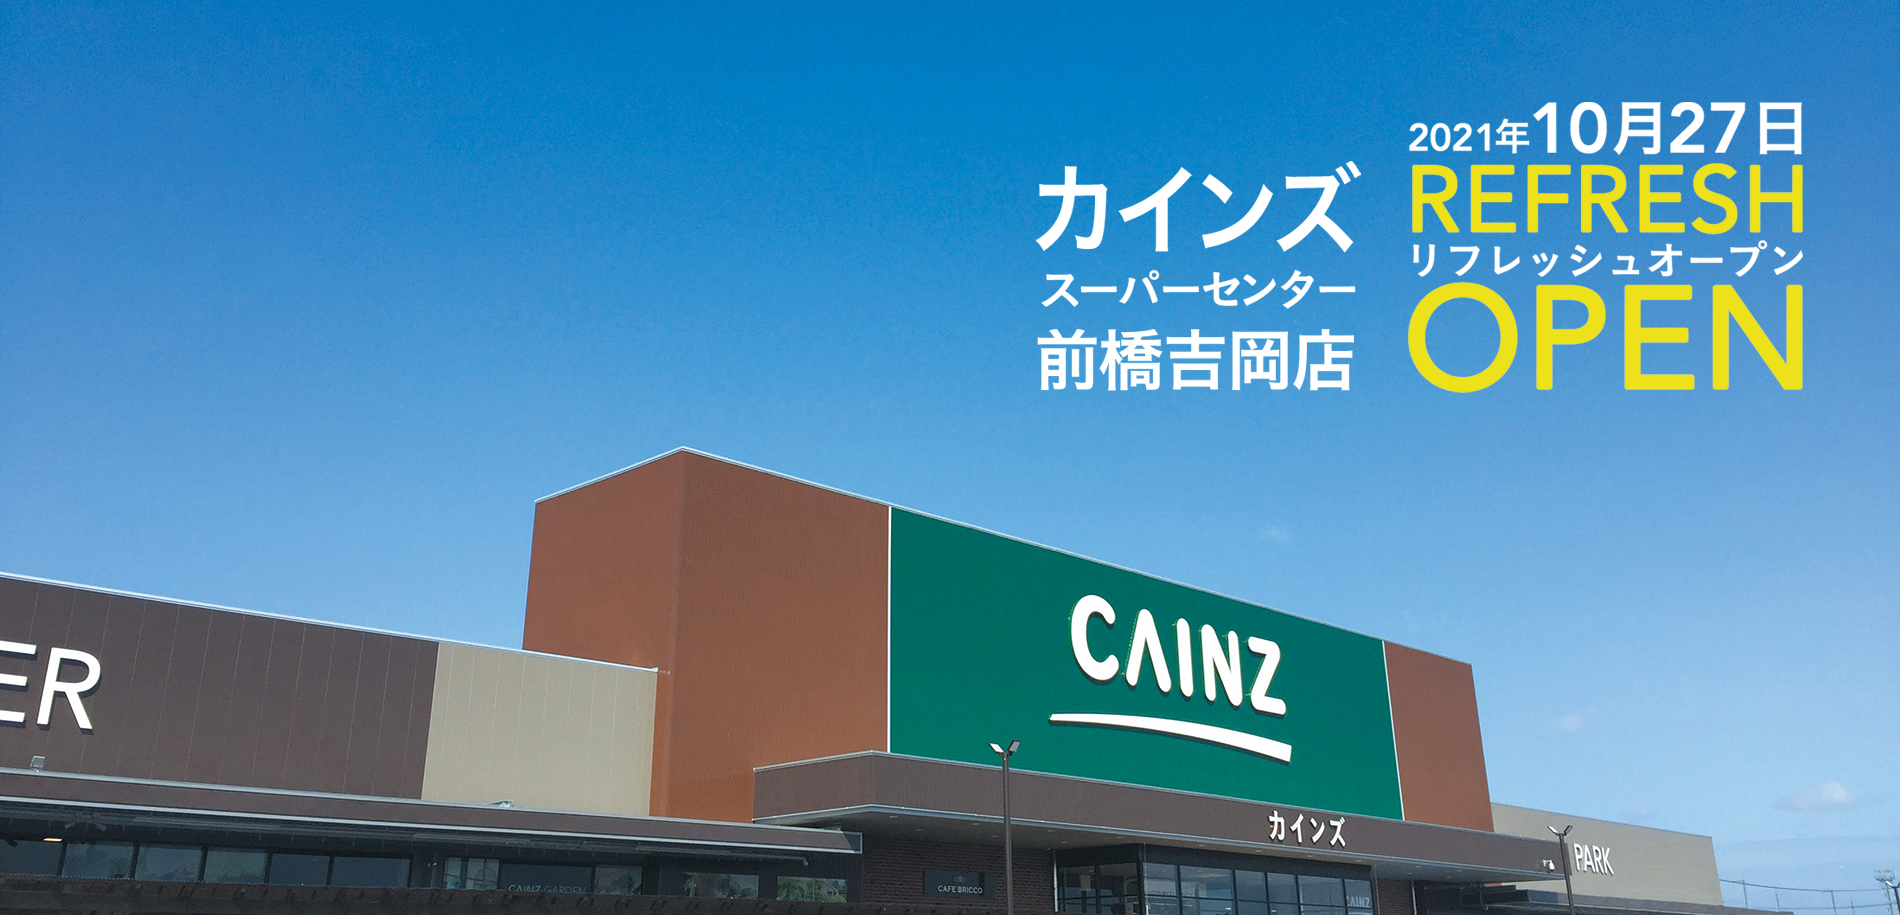 カインズスーパーセンター前橋吉岡店 10月27日リフレッシュオープン 株式会社カインズのプレスリリース